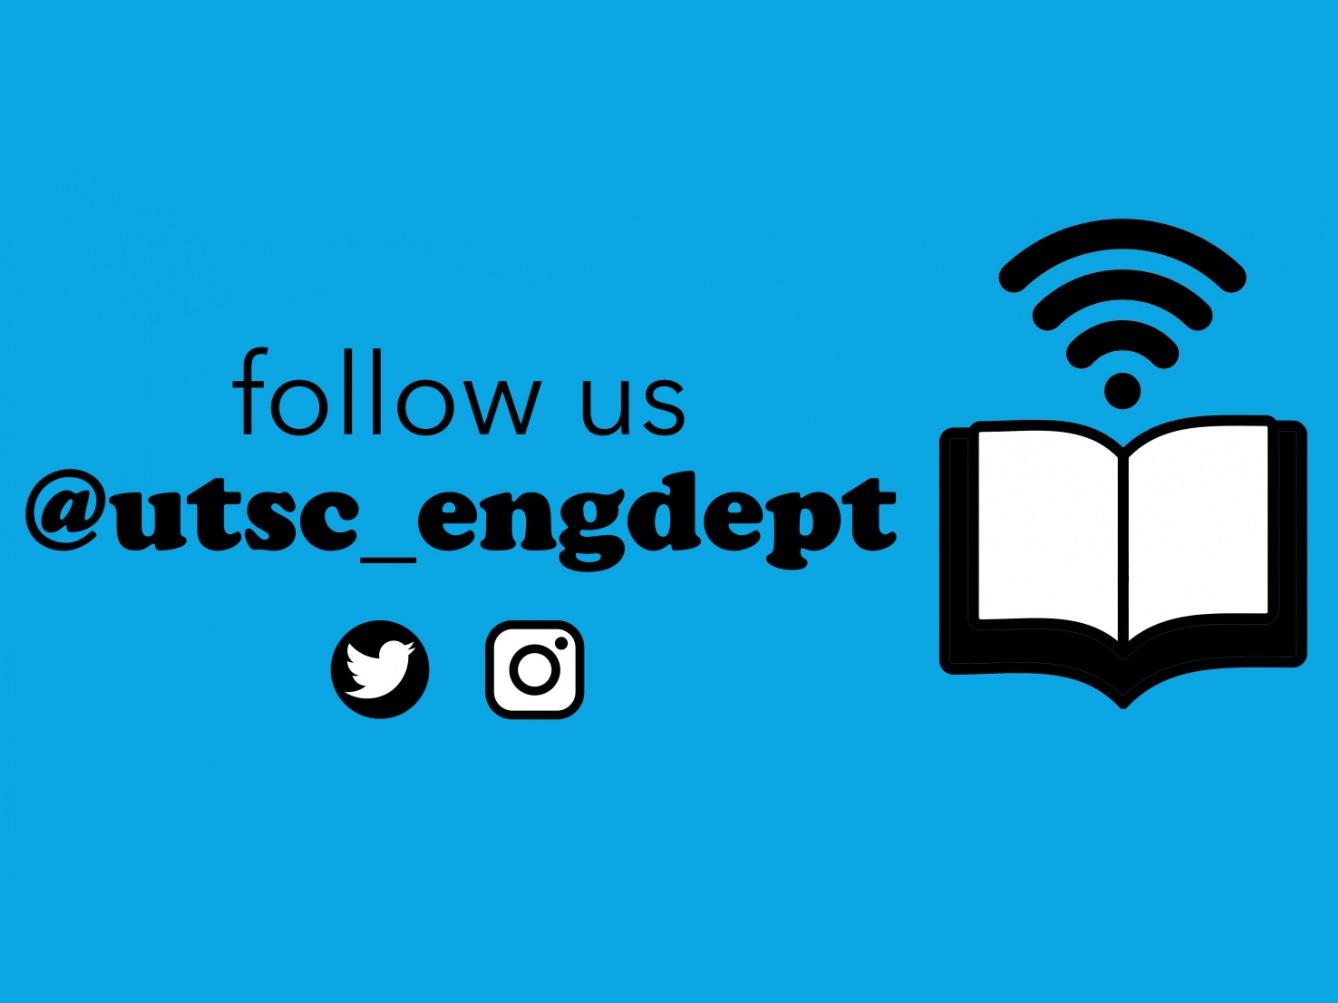 Follow us on Twitter & Instagram: @utsc_engdept